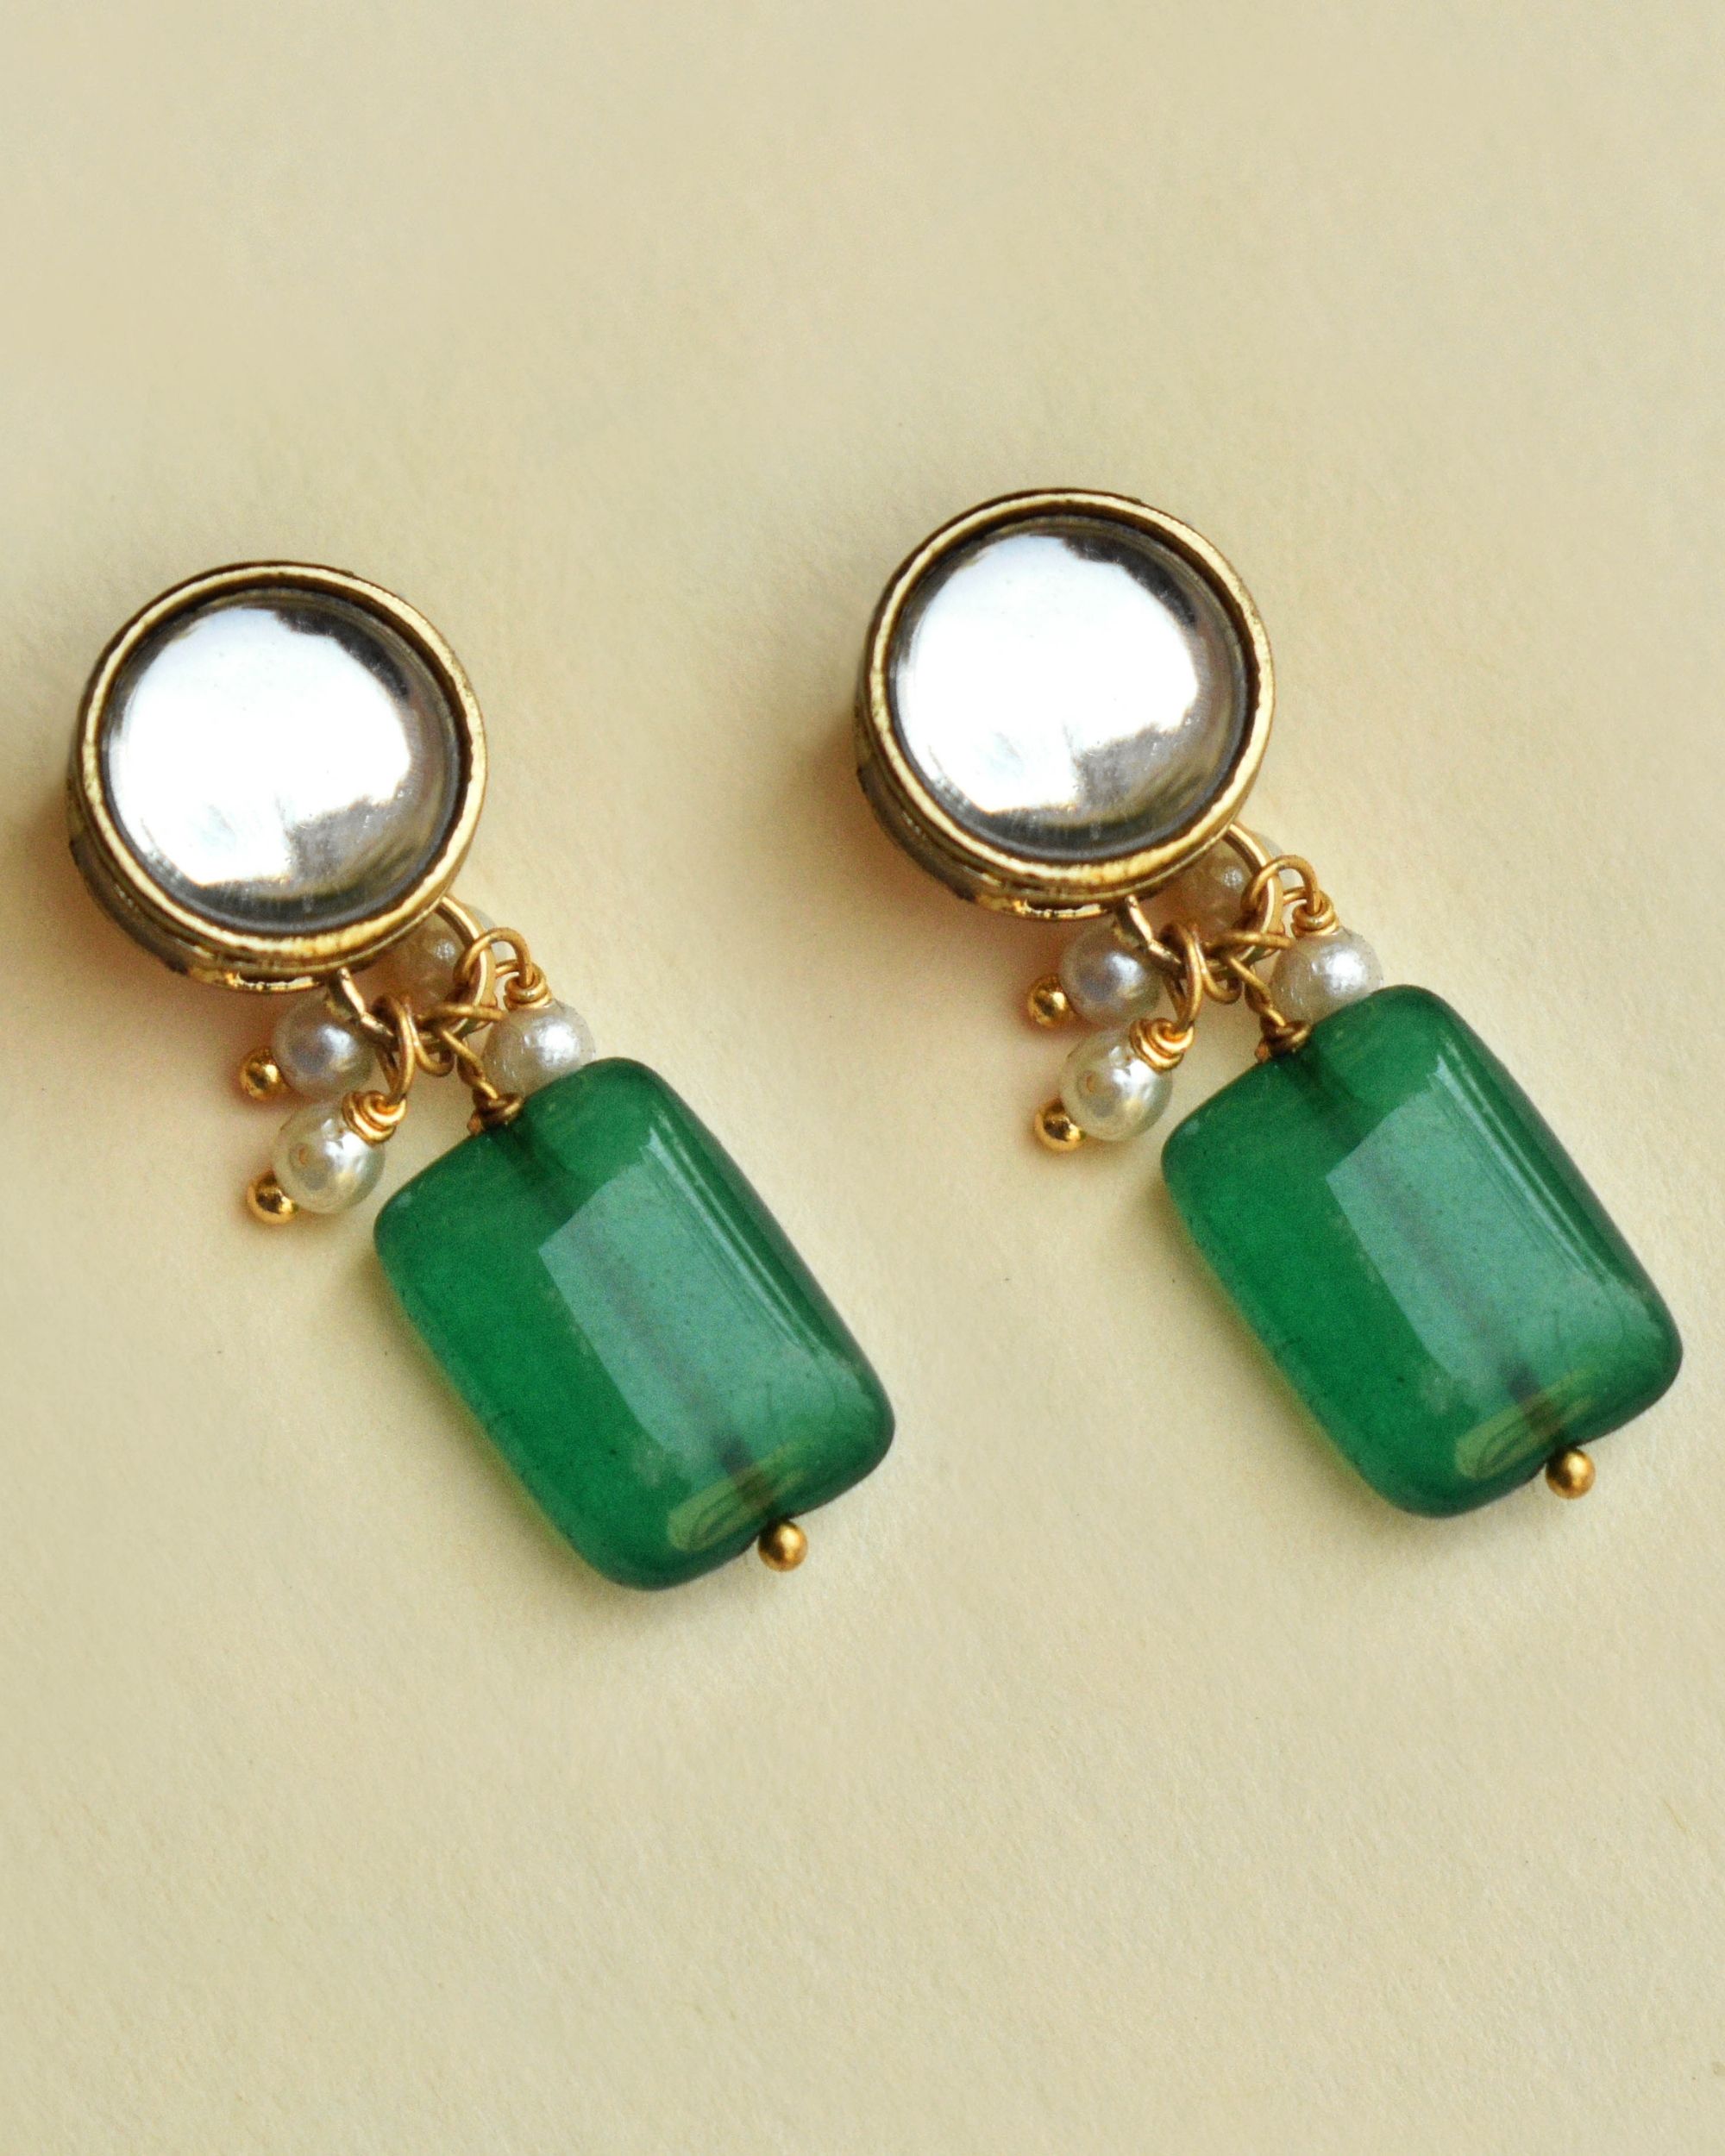 Green stone earrings